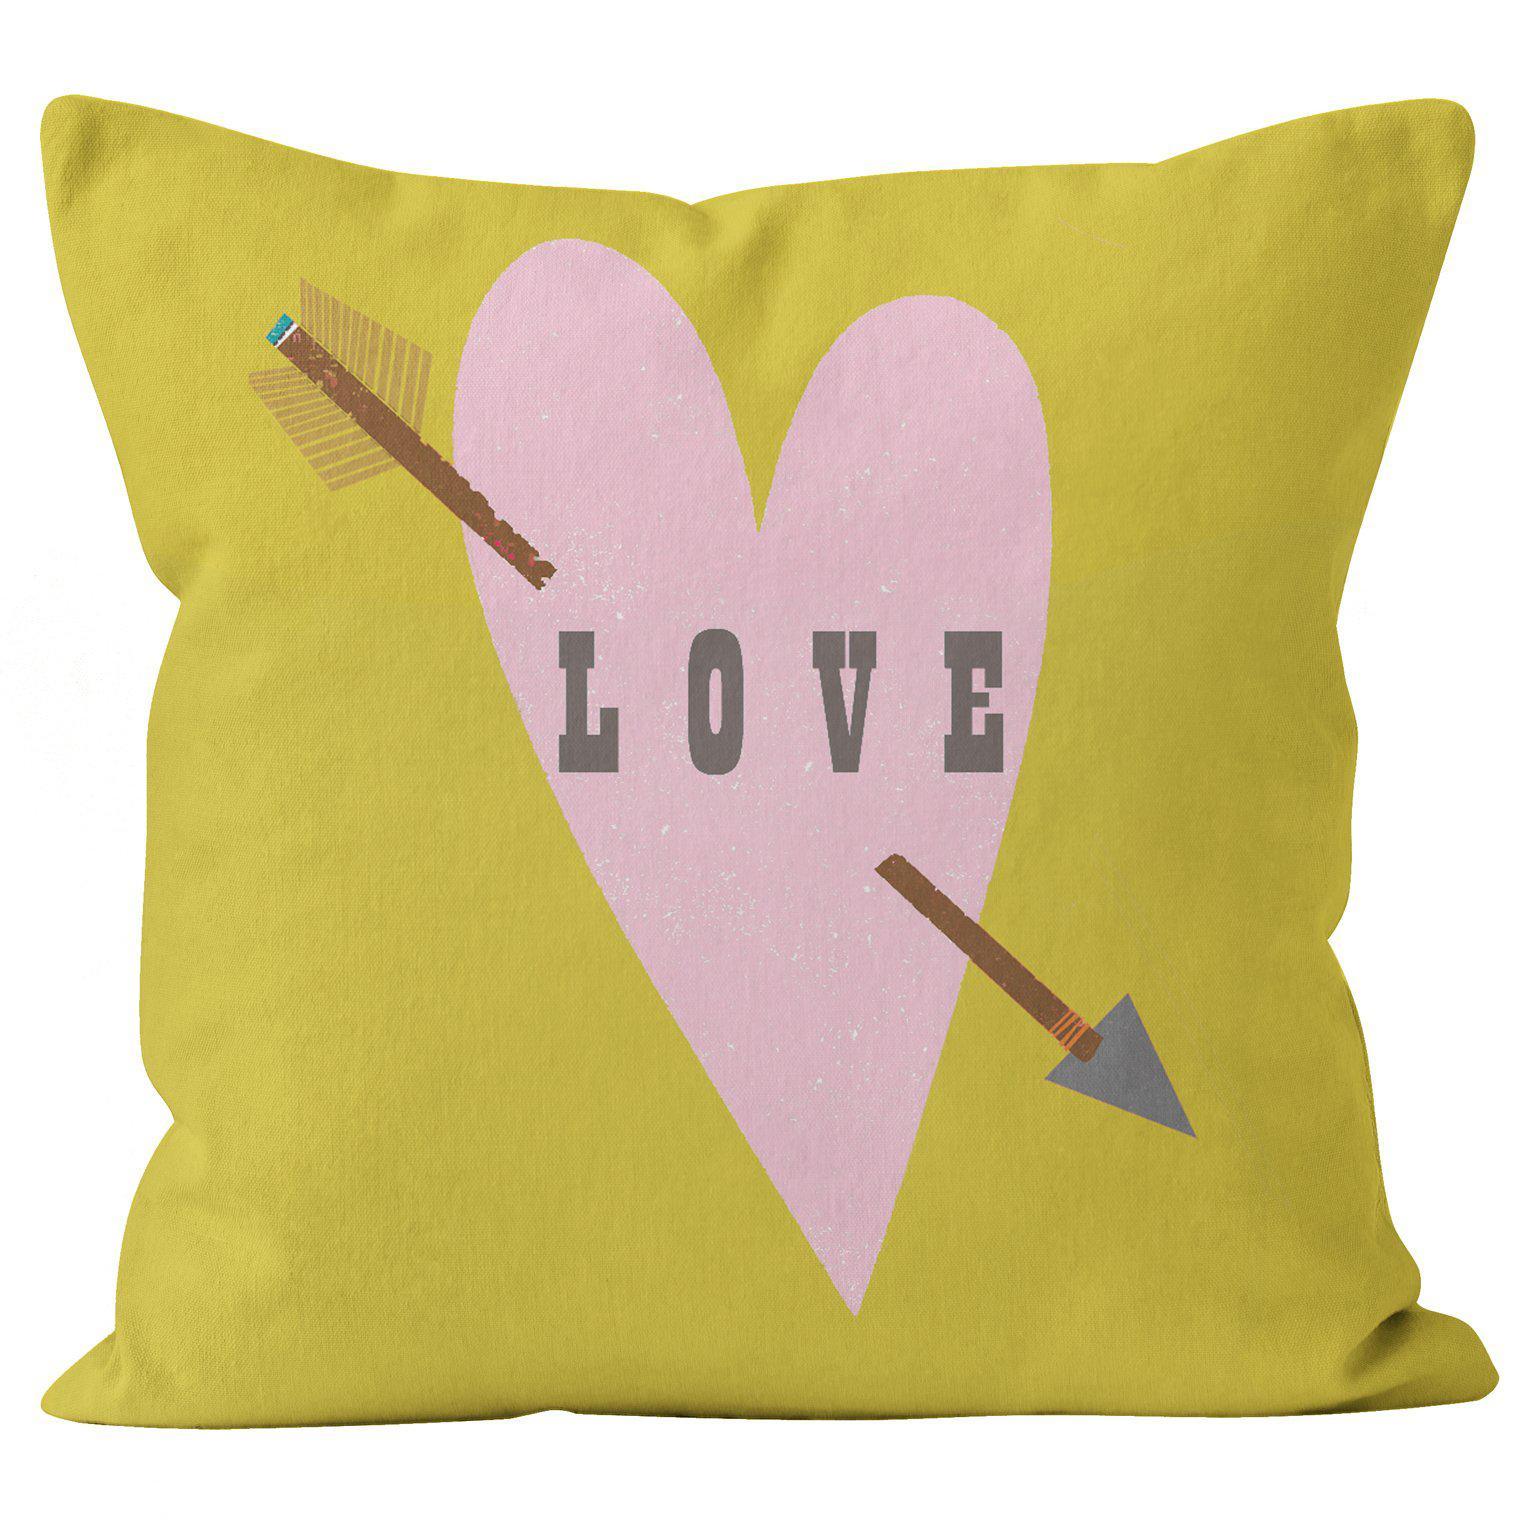 Love Heart - Kali Stileman Cushion - Handmade Cushions UK - WeLoveCushions